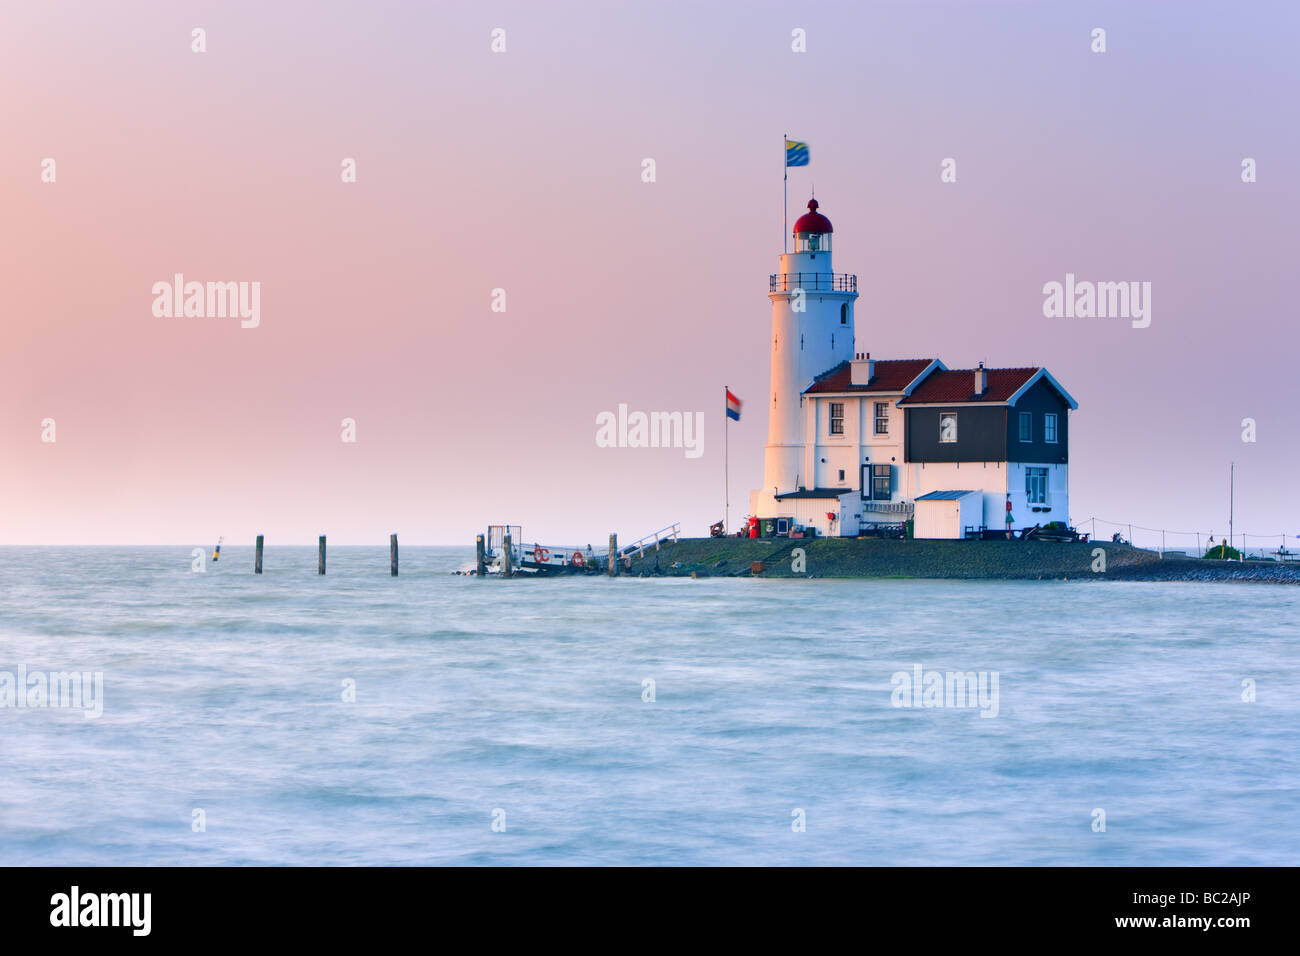 Sunrise Lighthouse Paard van Marken on Lake IJssel, close to Amsterdam, Netherlands Stock Photo